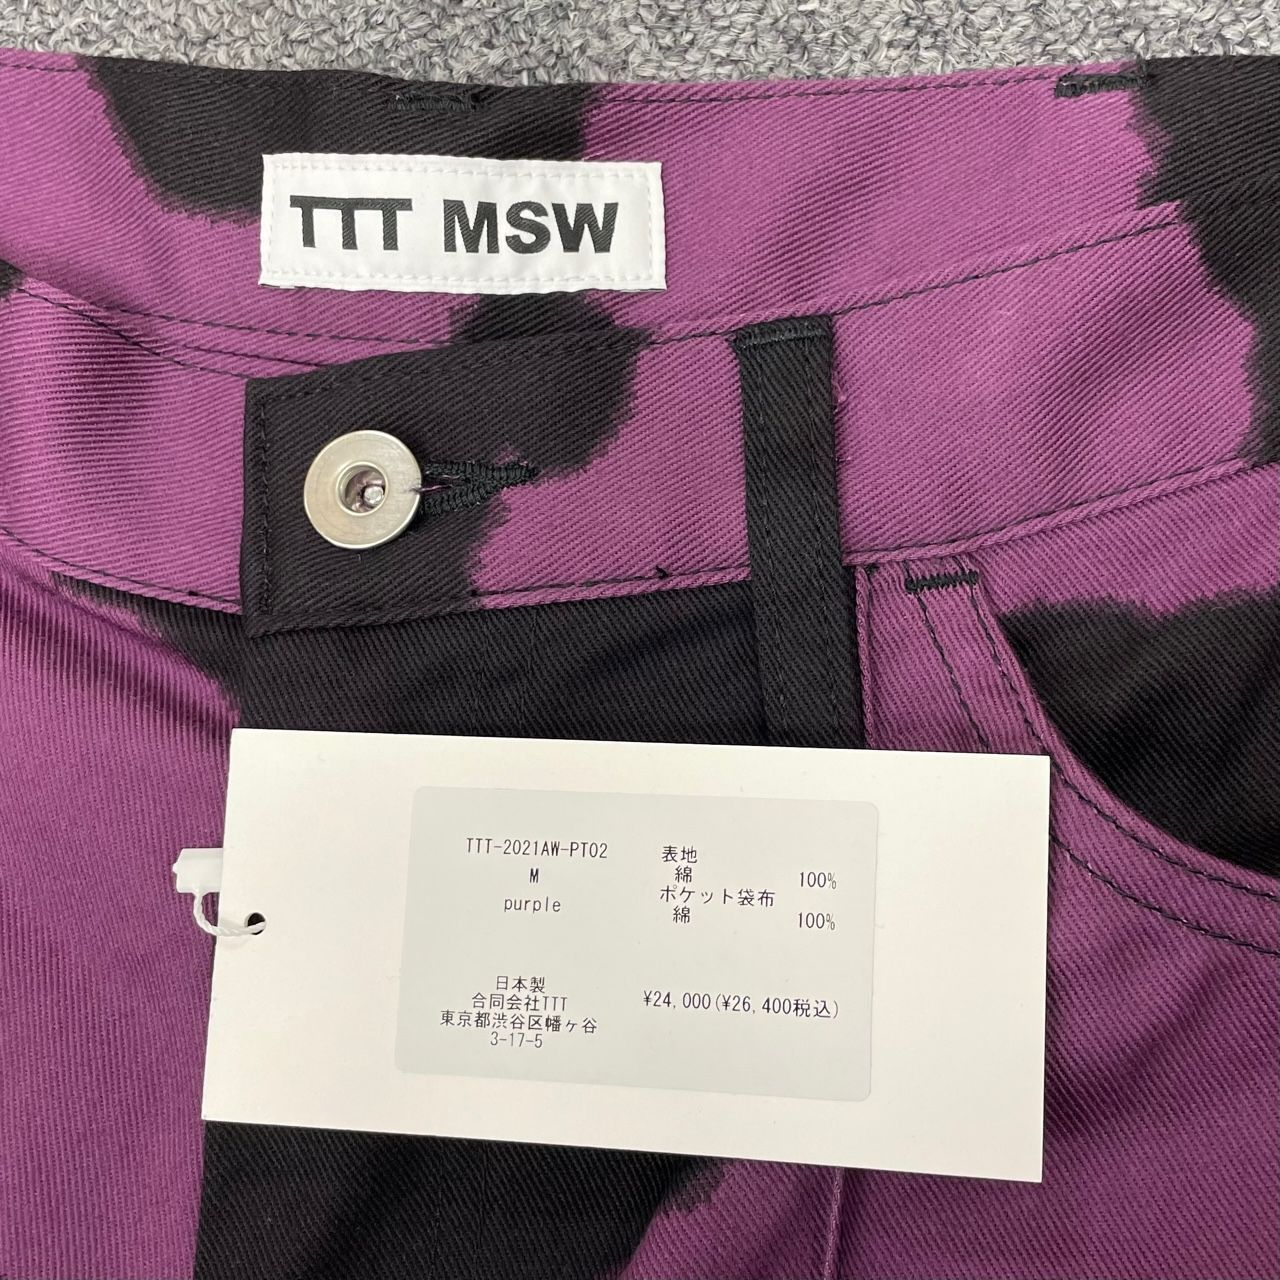 超特価セール商品 TTT MSW 21aw Holstein Work Pants パンツ | www